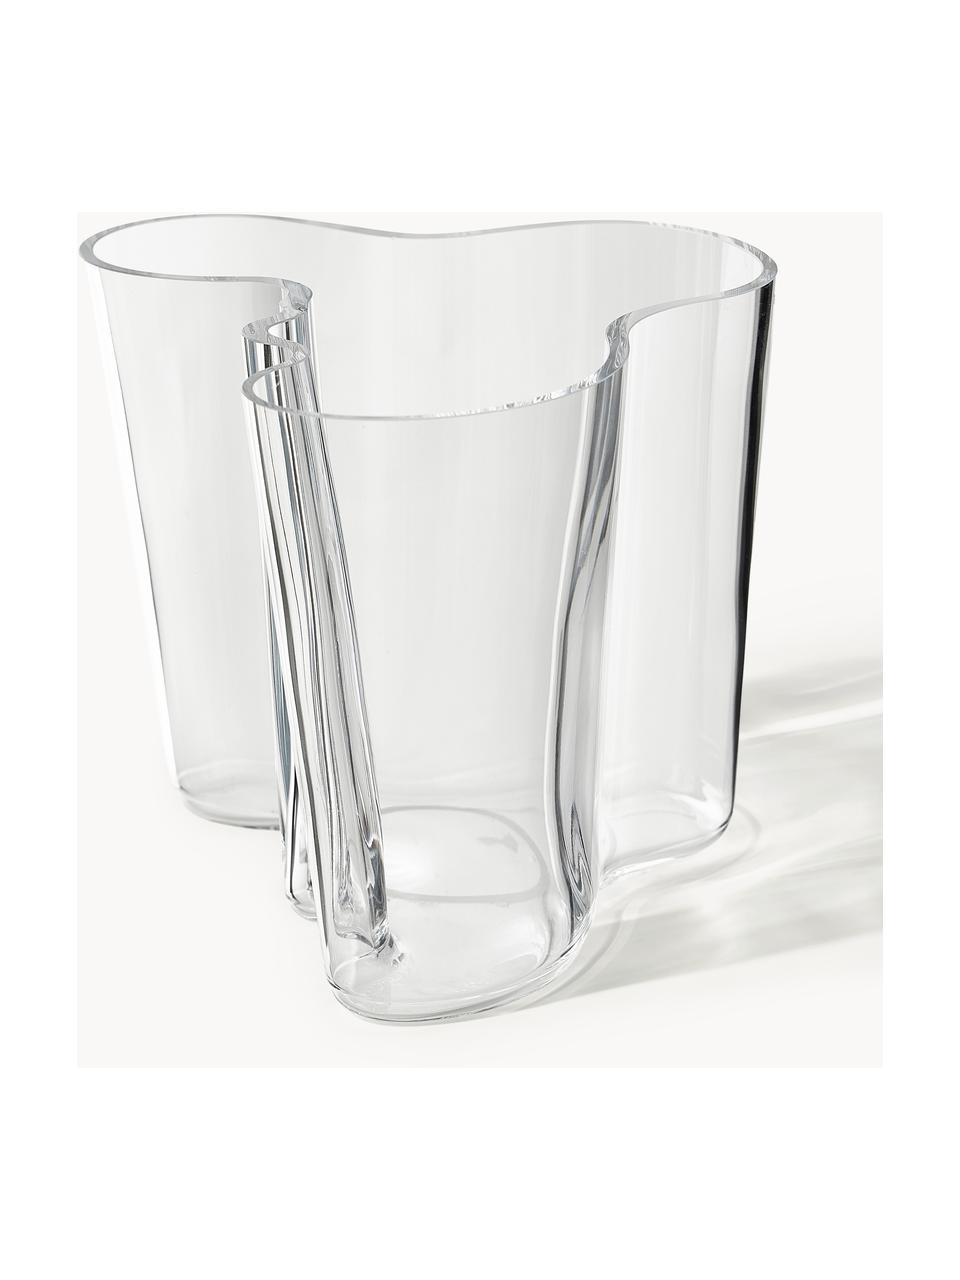 Mondgeblazen vazen Alvaro Aalto, set van 2, Mondgeblazen glas, Transparant, Set met verschillende formaten